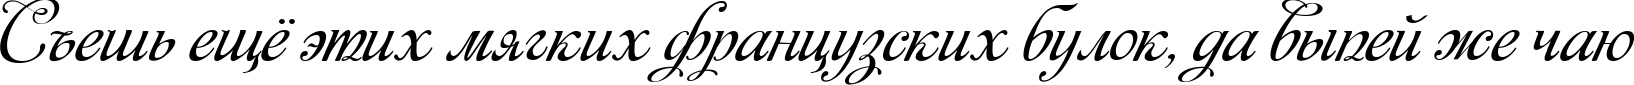 Пример написания шрифтом Monplesir script текста на русском